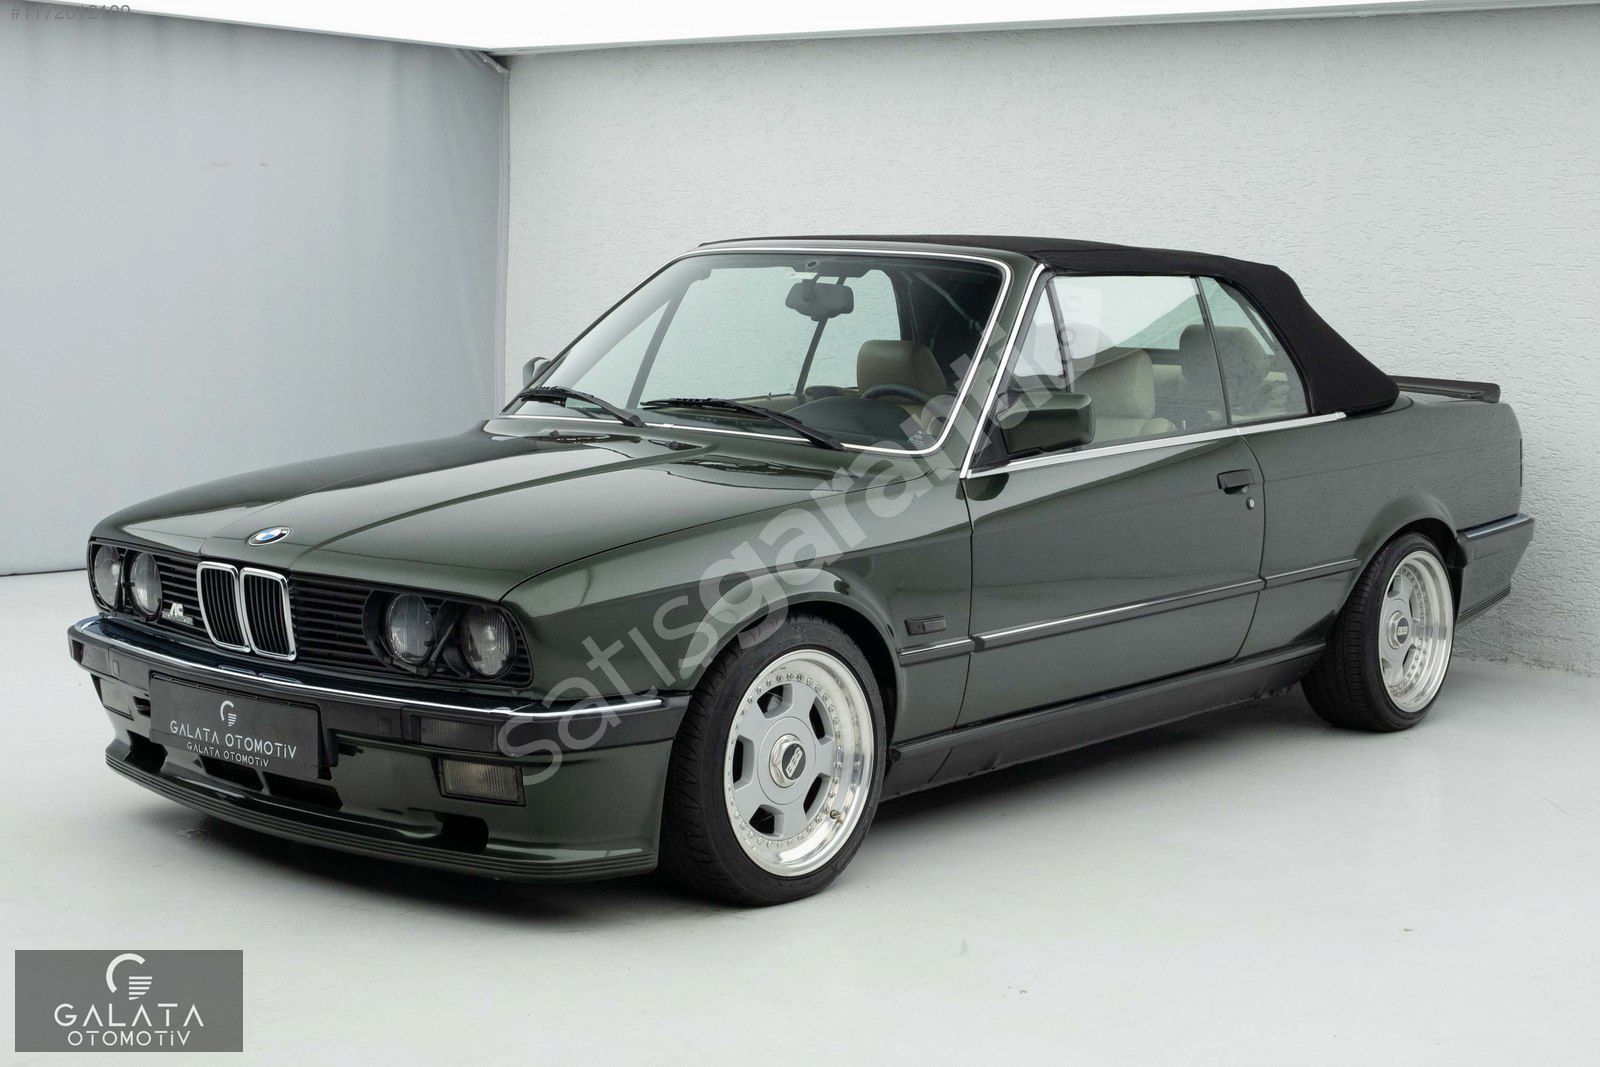 'GALATA' 1988 BMW E30 320I CABRIO M TECHNIC